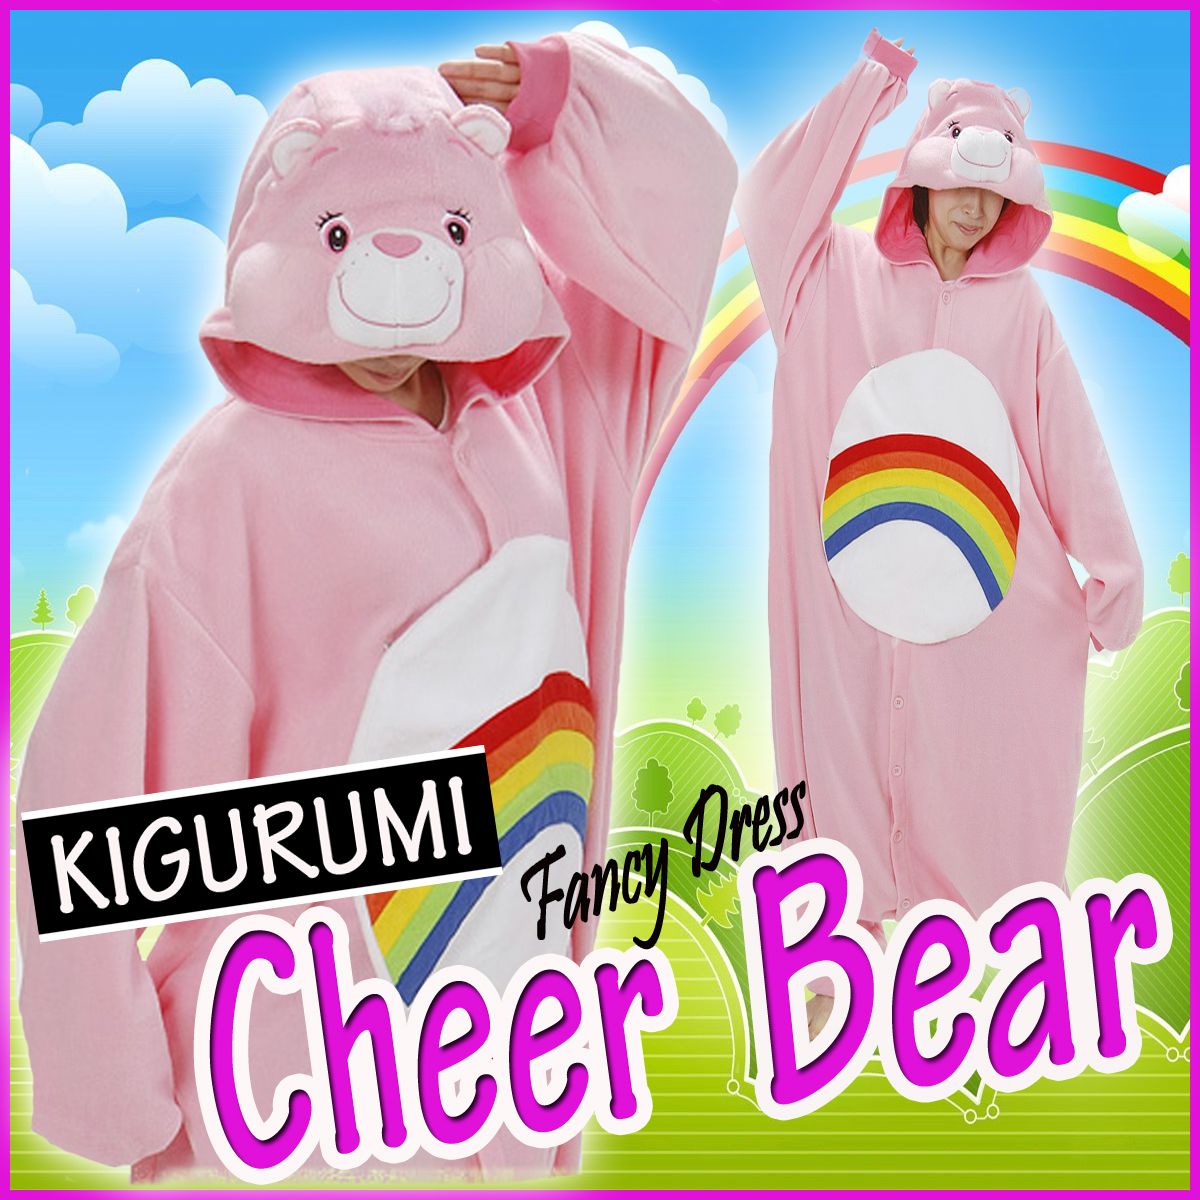 NEW Kigurumi Fancy Dress Cheer Bear Costume Care Bears Pajamas Japan